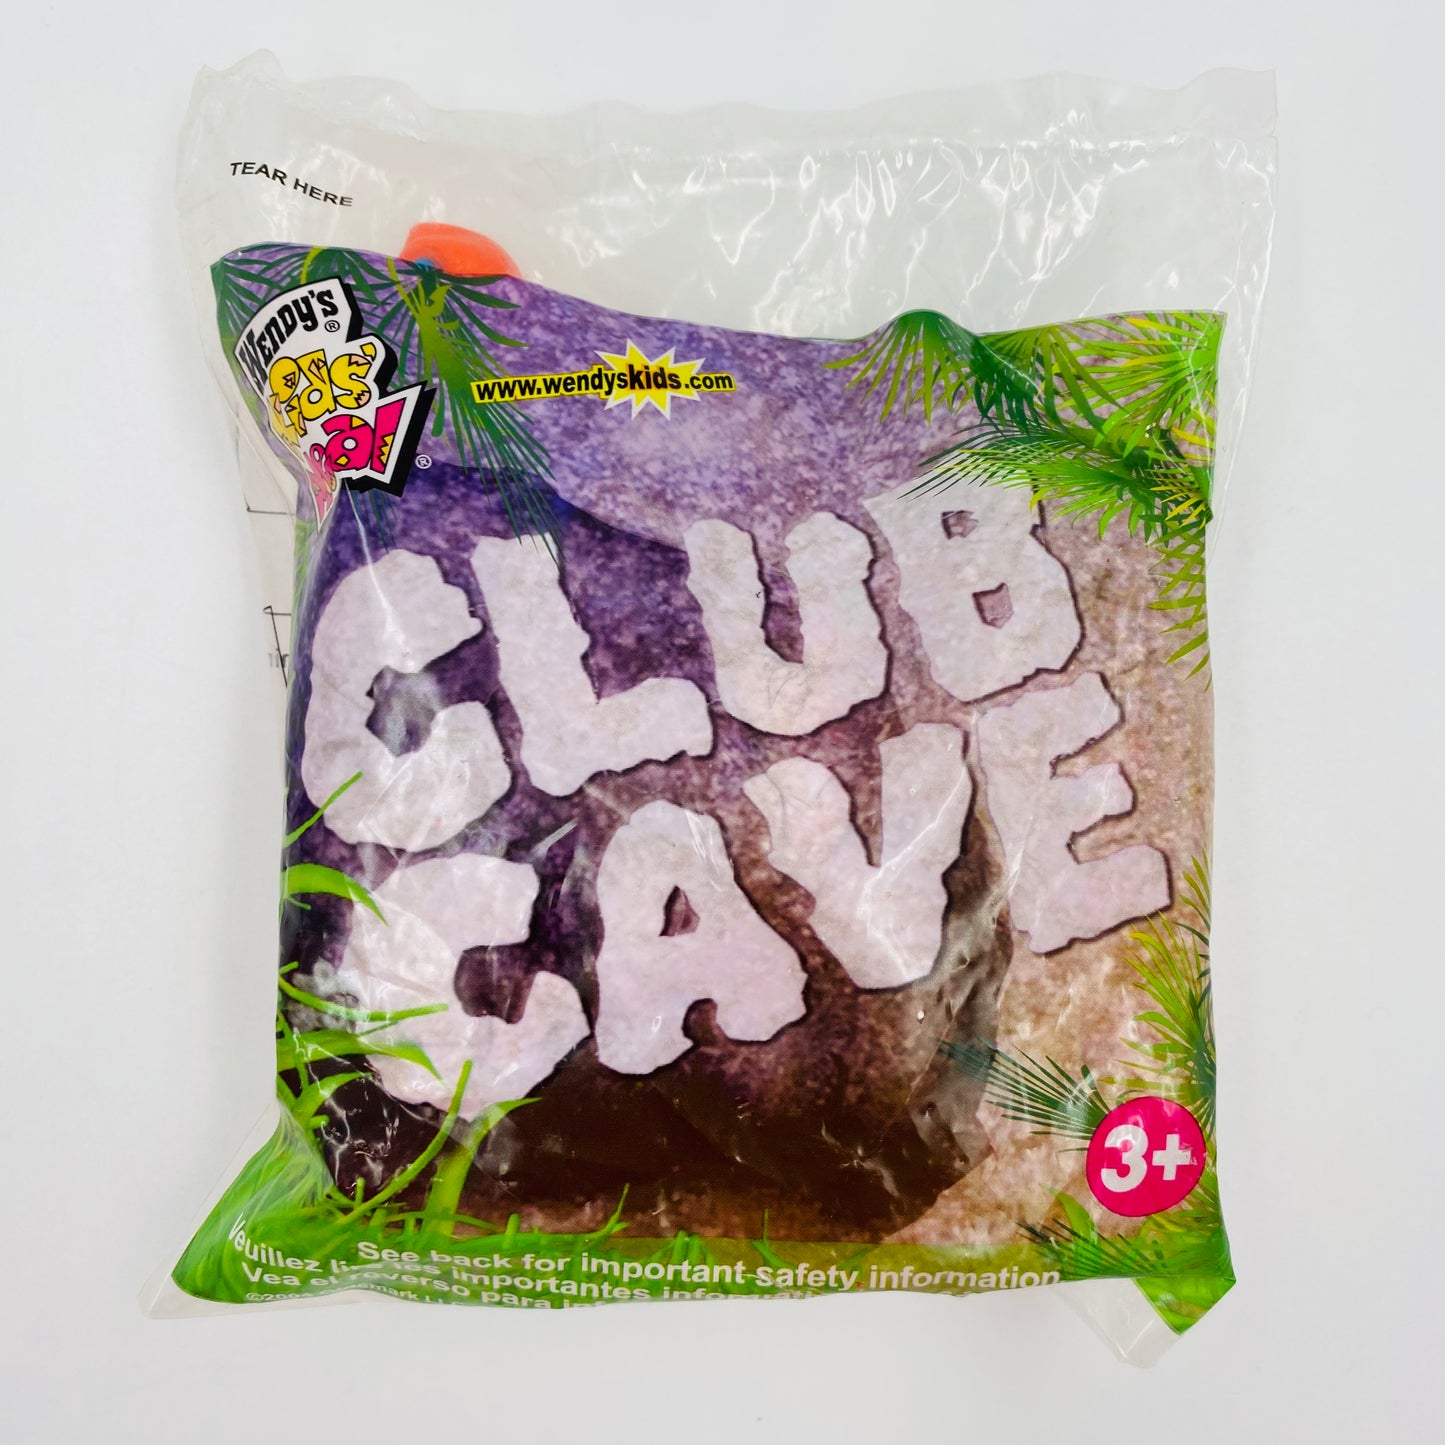 Playskool Club Cave dinosaur bank Wendy's Kids' Meal toy (2004) bagged